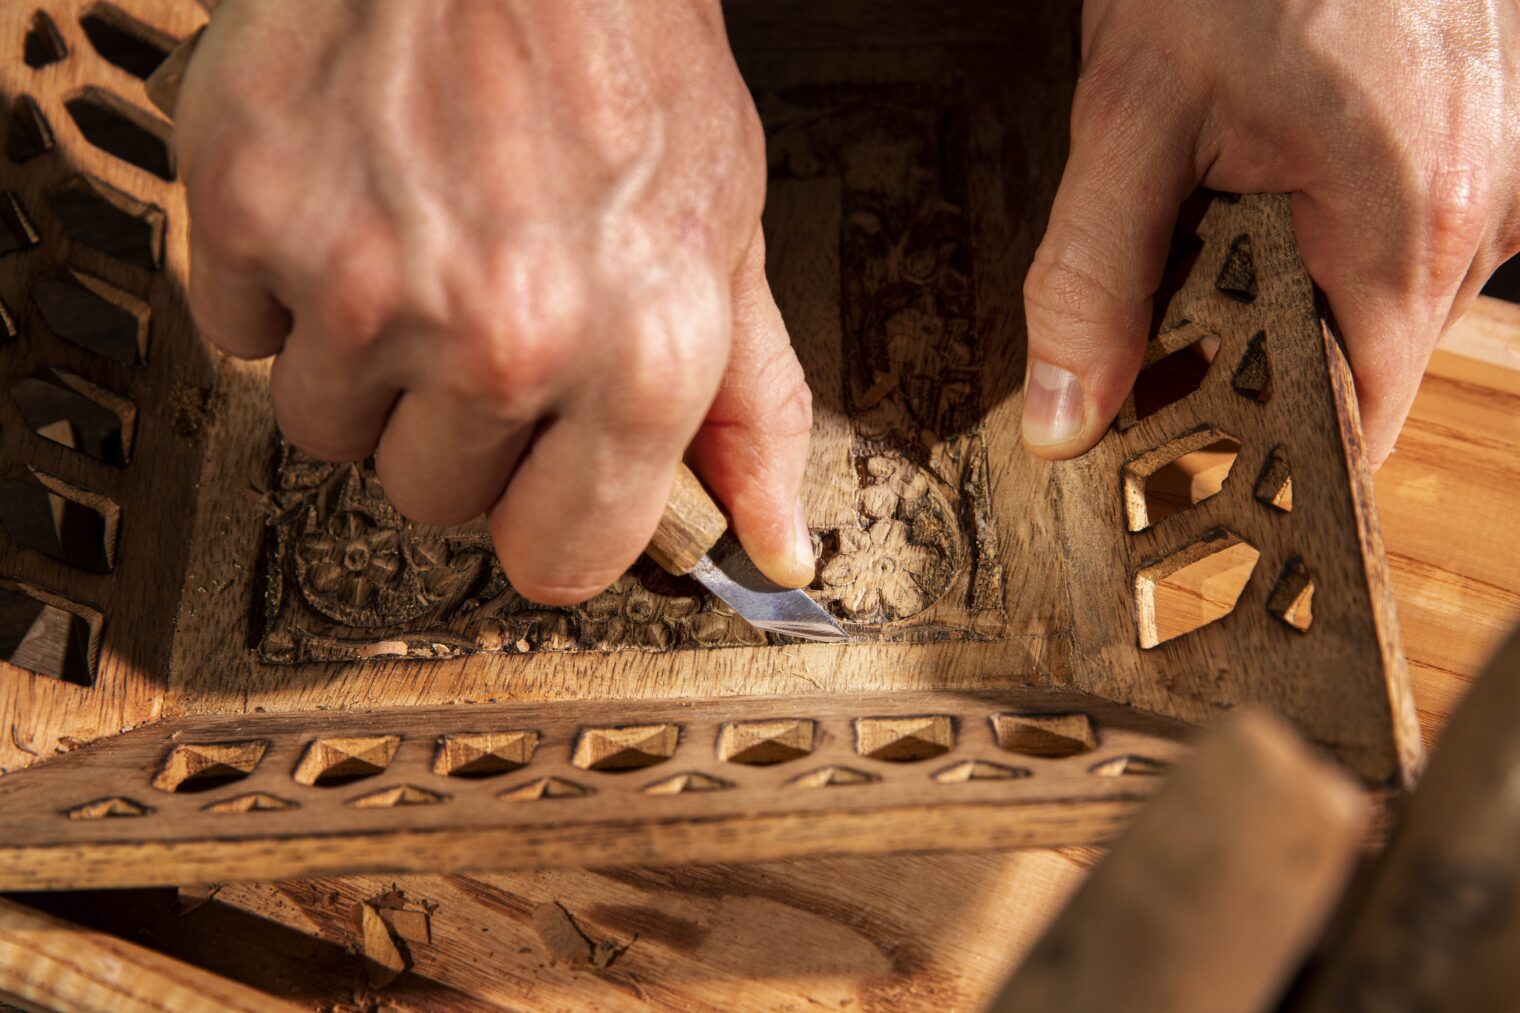 Meilleurs Apprentis de France - Métier Sculpteur sur bois